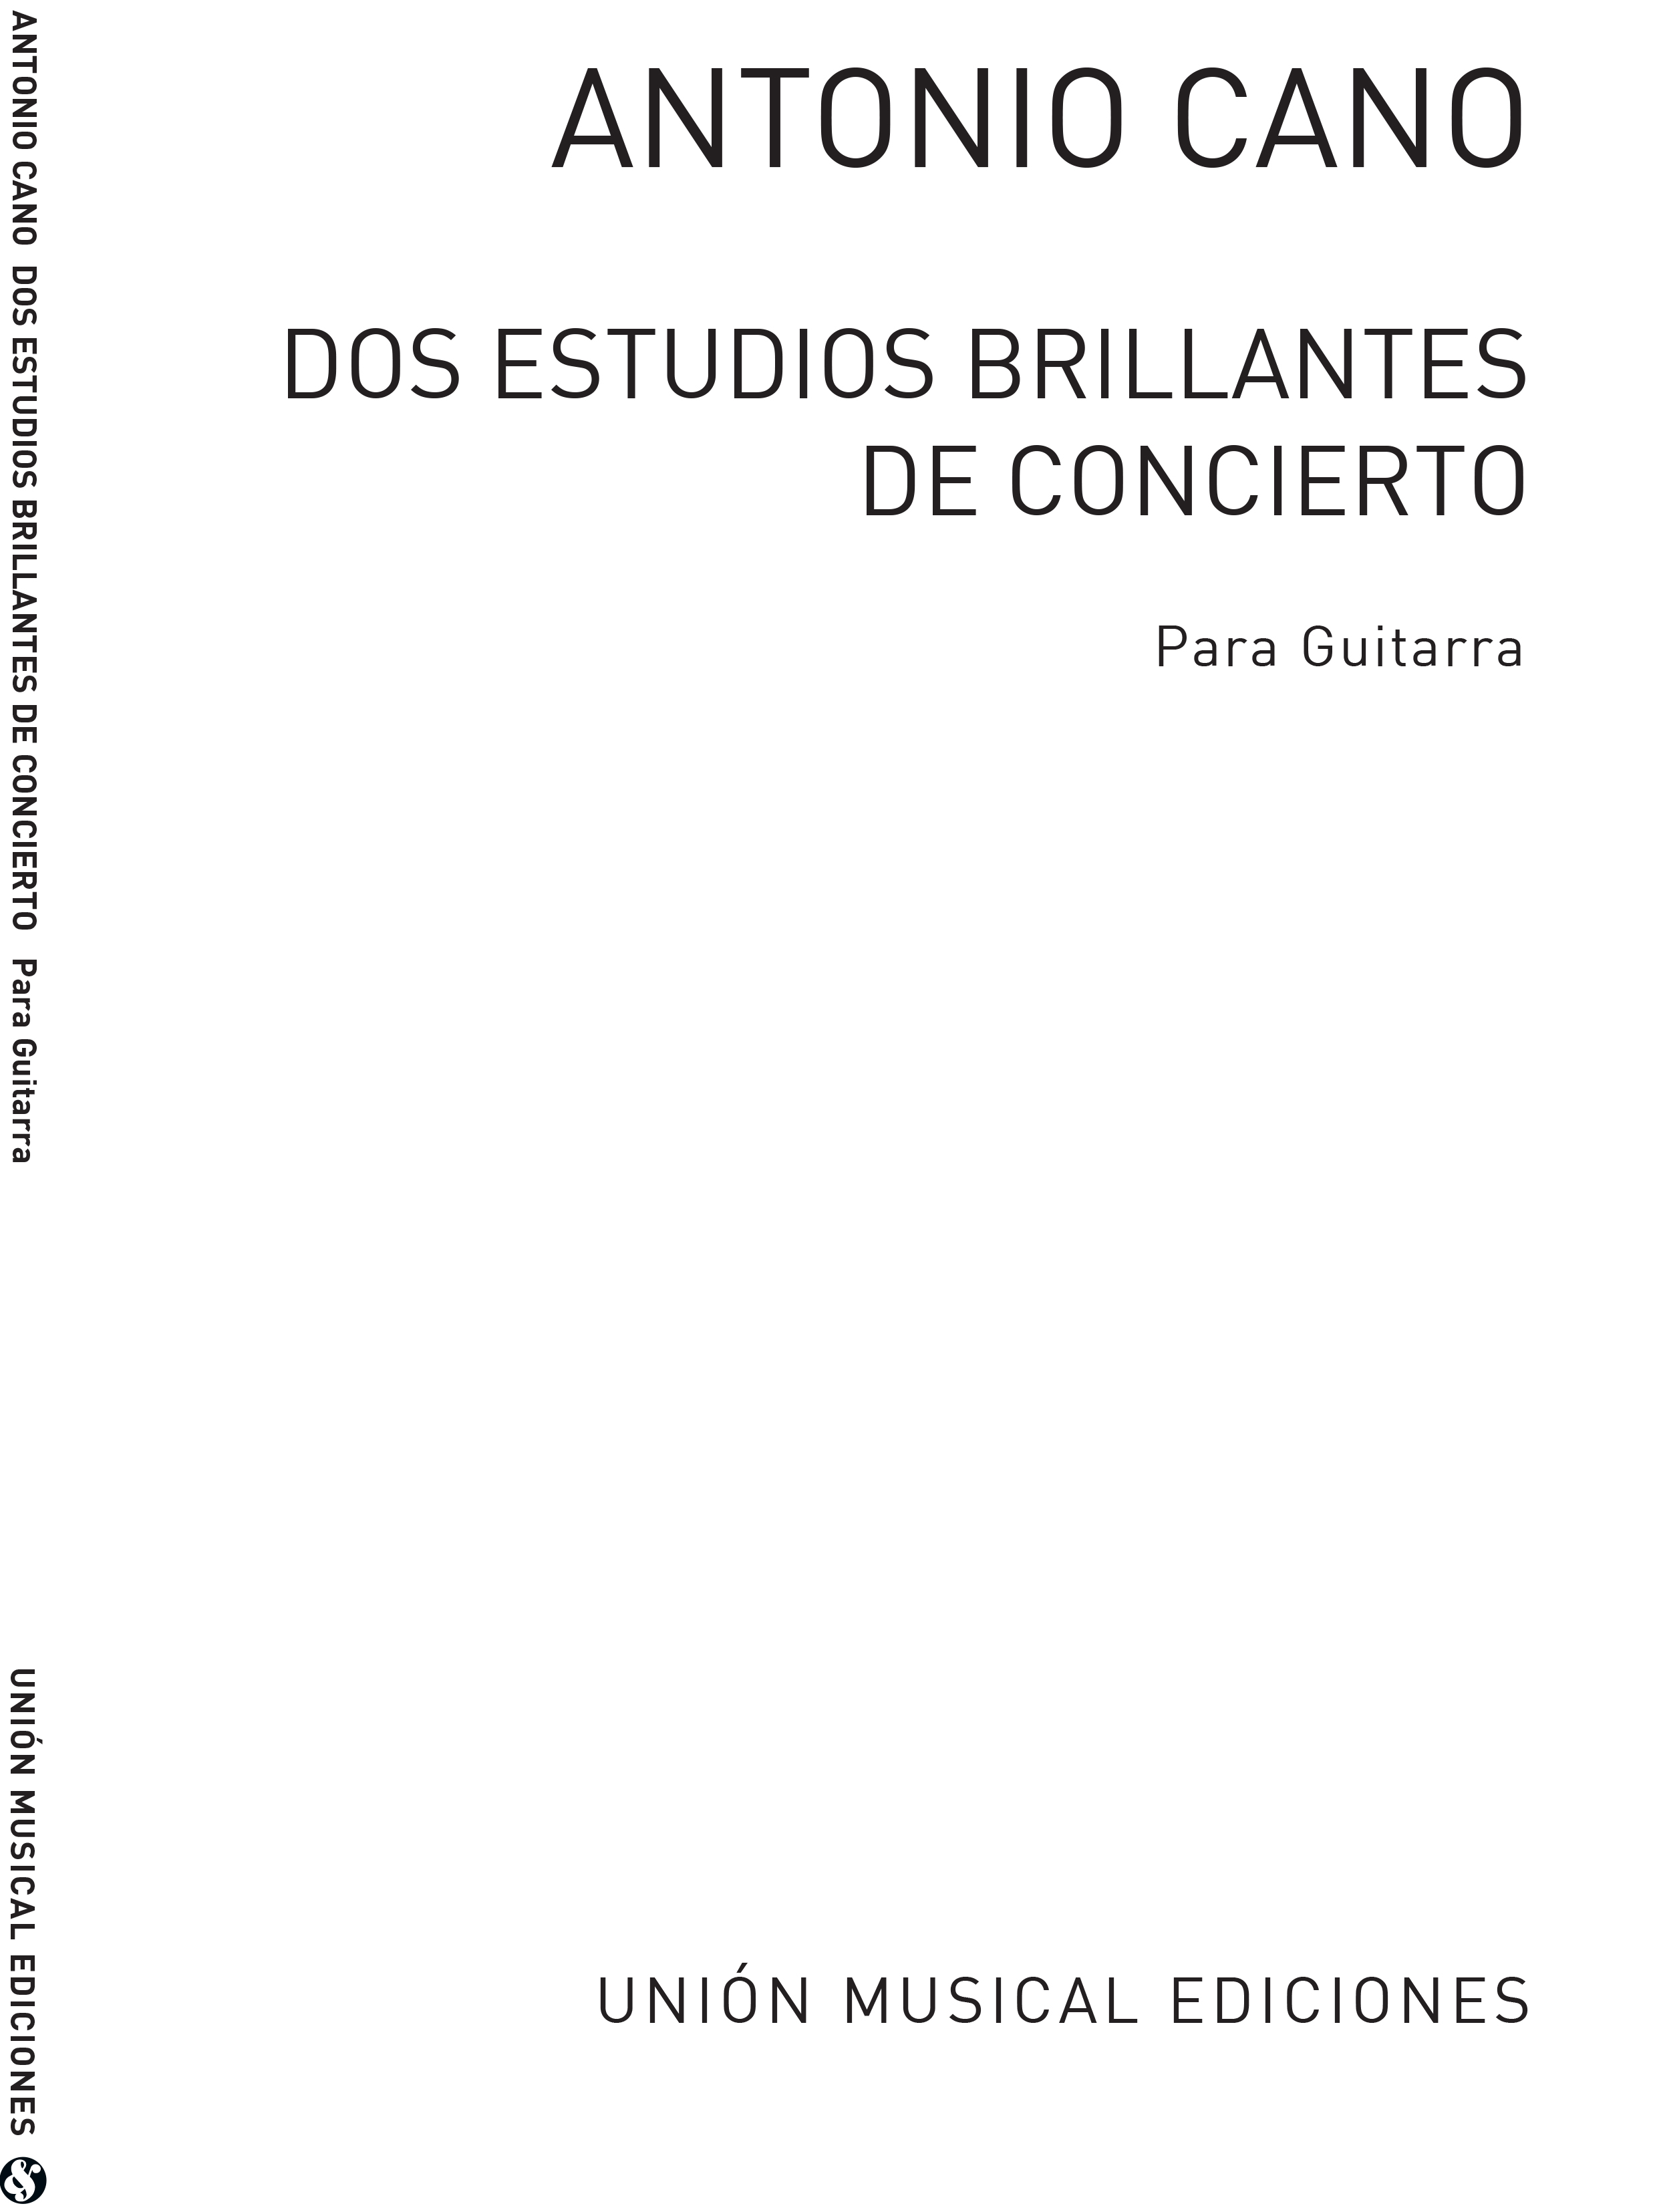 Antonio Cano: Dos Estudios Brillantes De Concierto: Guitar: Instrumental Work